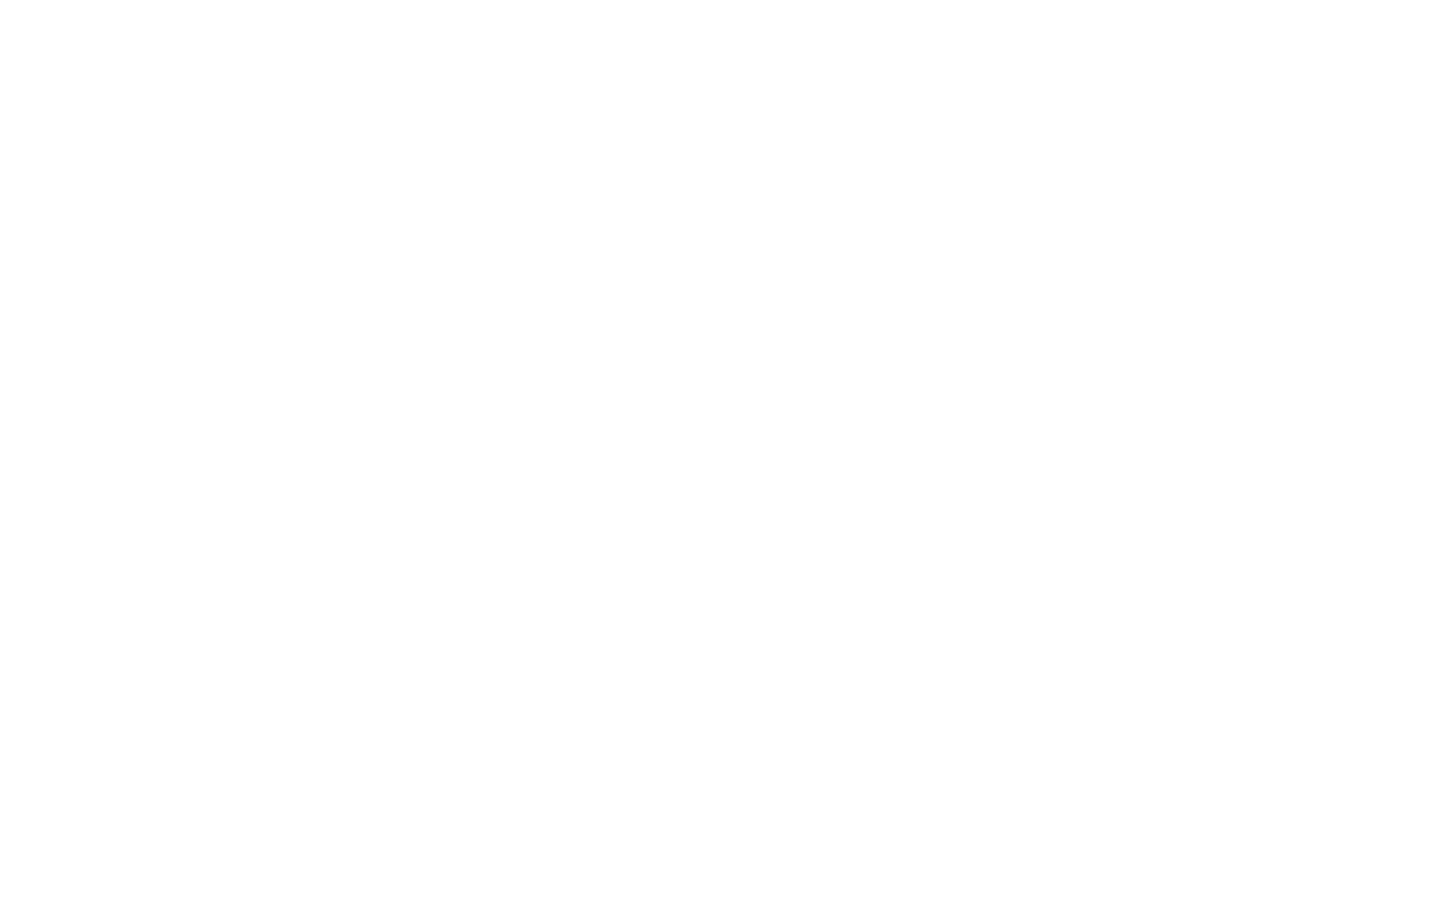 SpartanNash logo